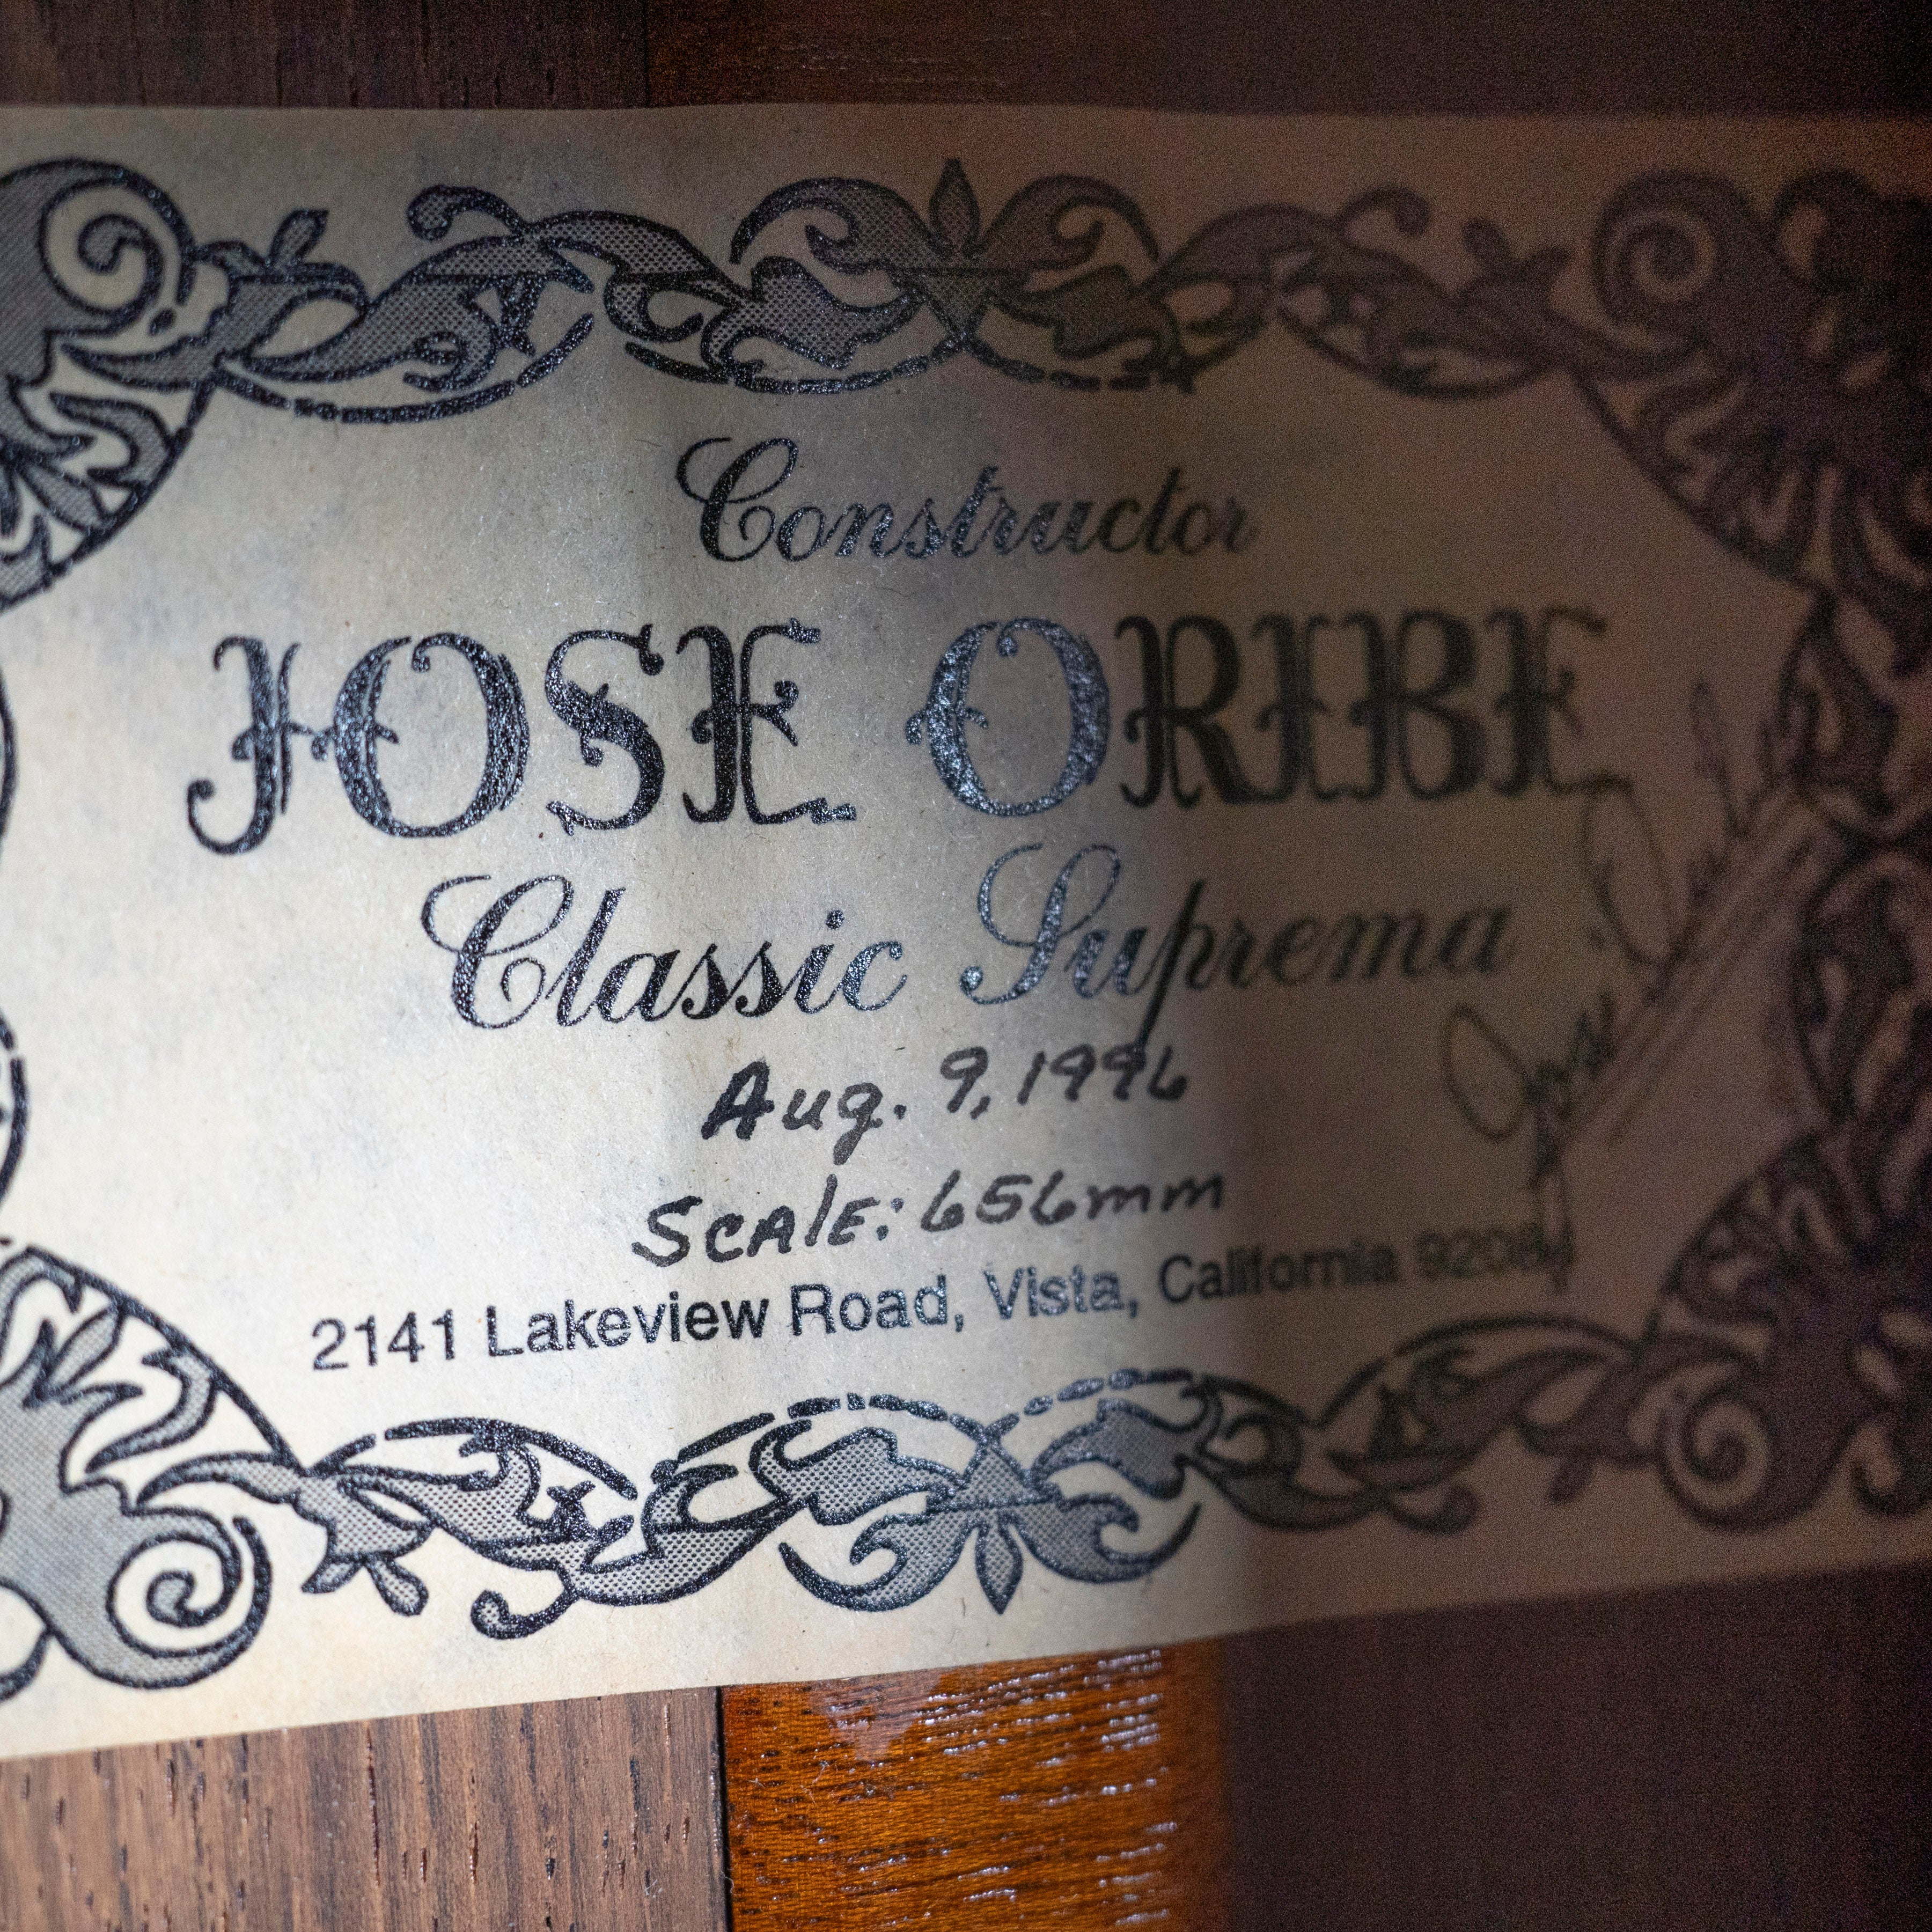 Jose Oribe 1996 "Classic Suprema" Classical